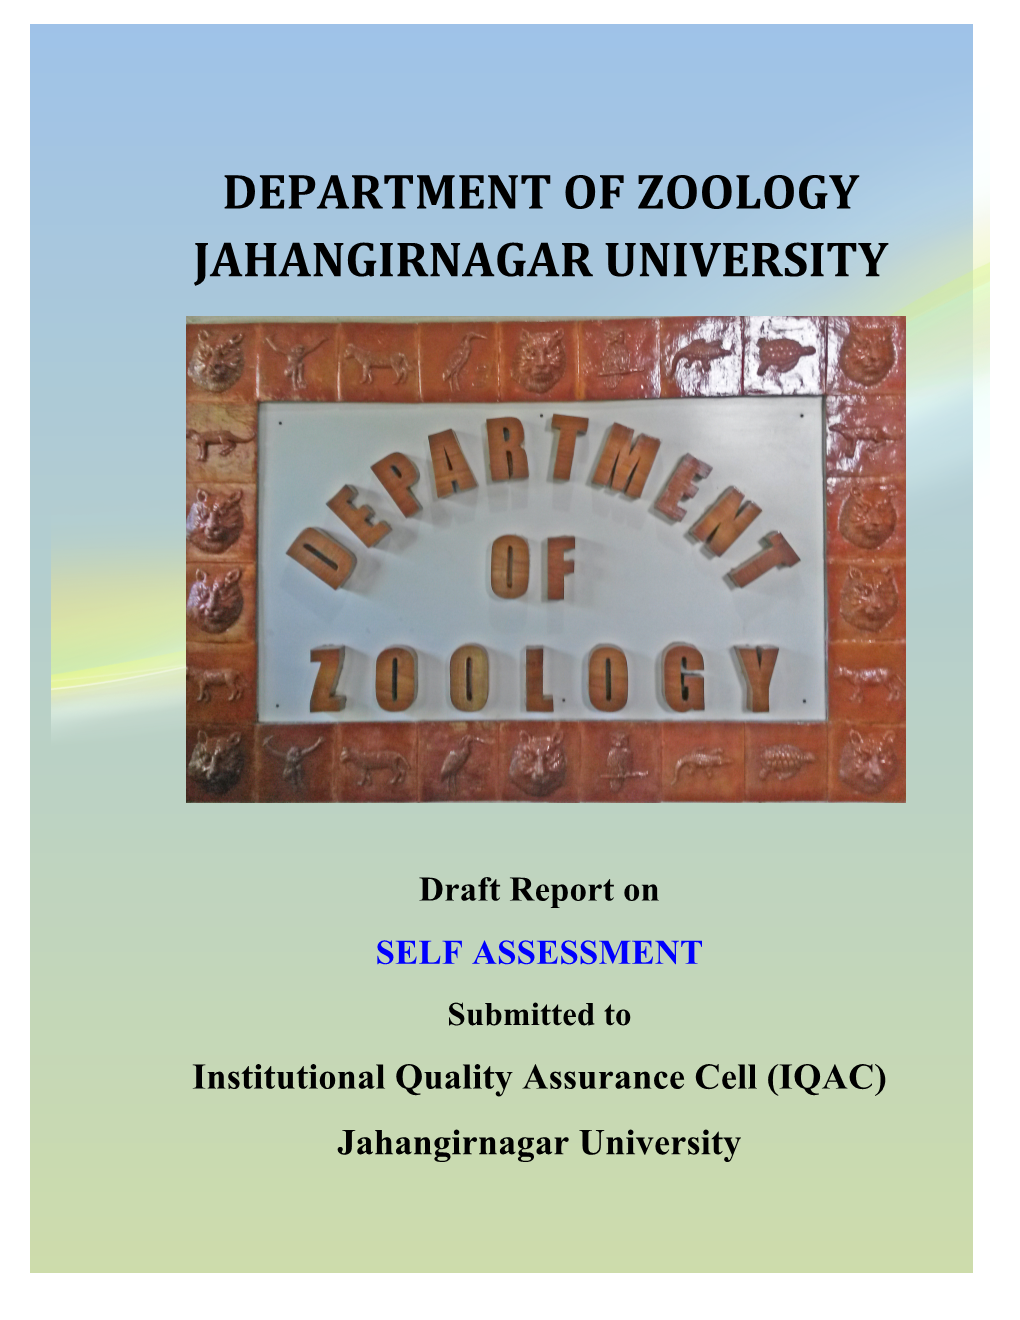 Department of Zoology Jahangirnagar University